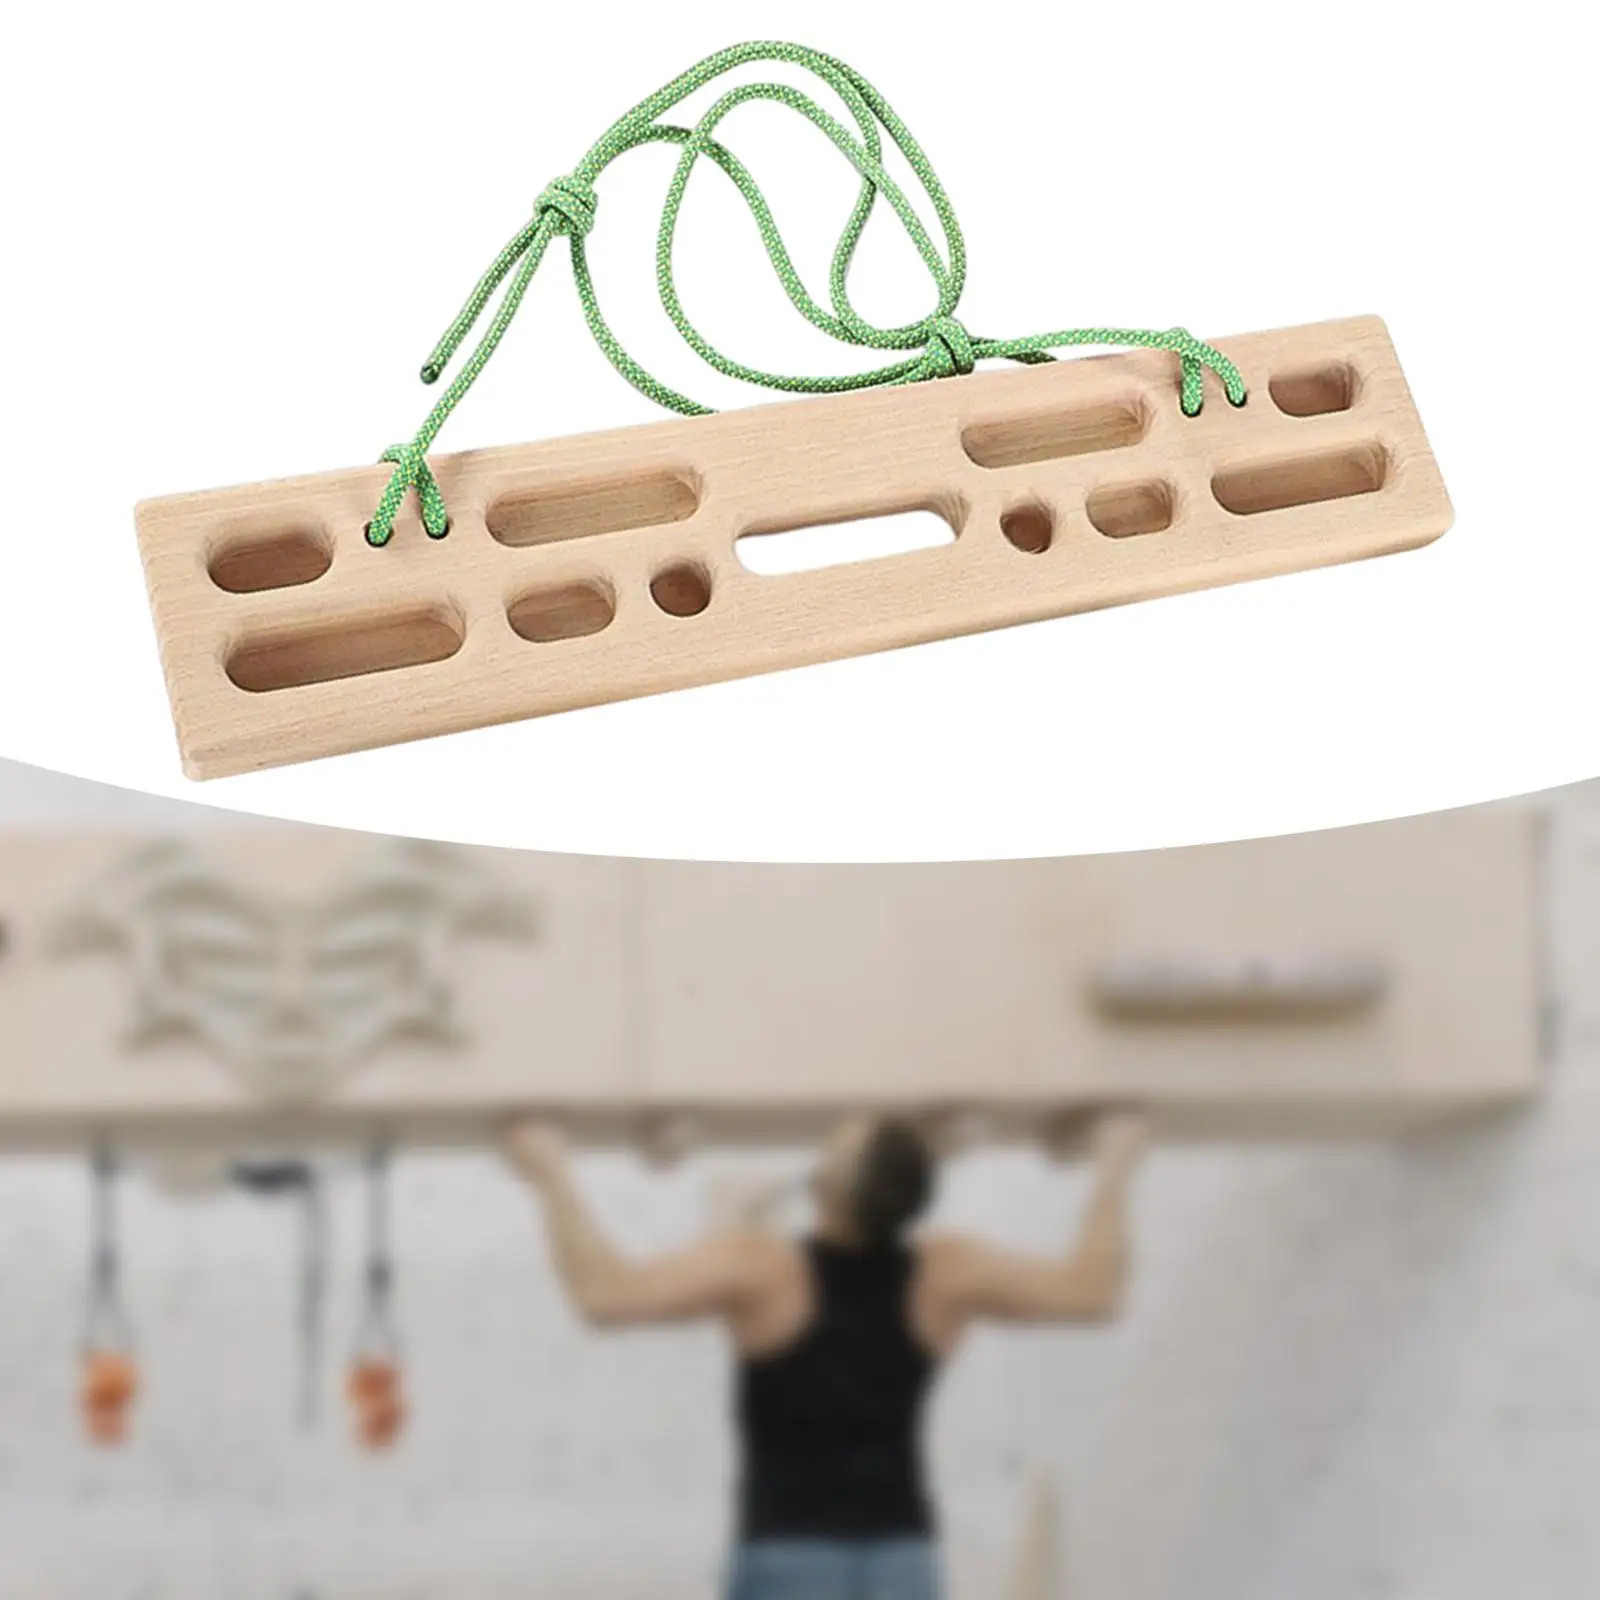 Climbing Hangboard Fingerboard Exerciser 50cmx10cm for Indoor Beginners Home